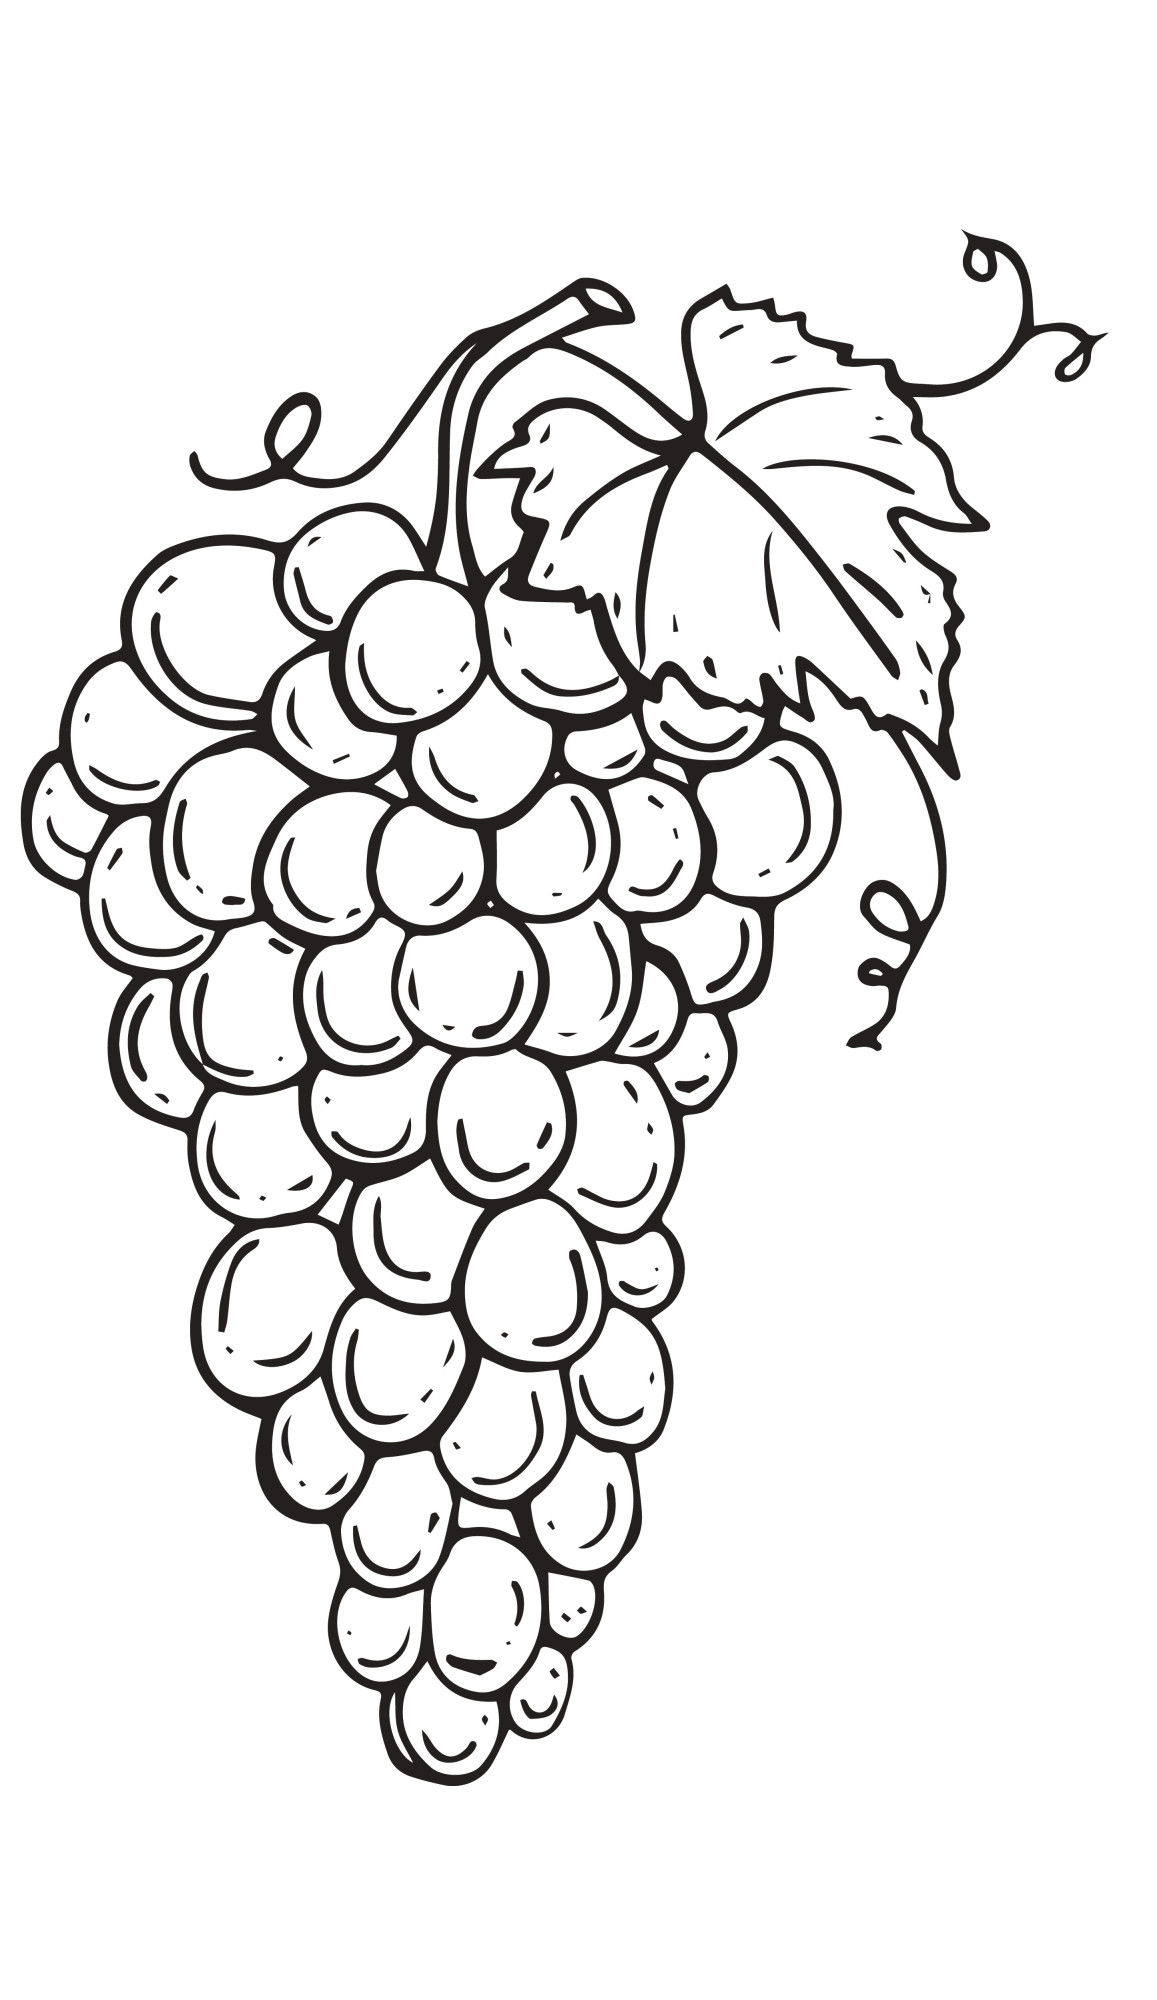 Раскраска для детей: свежая ветка винограда